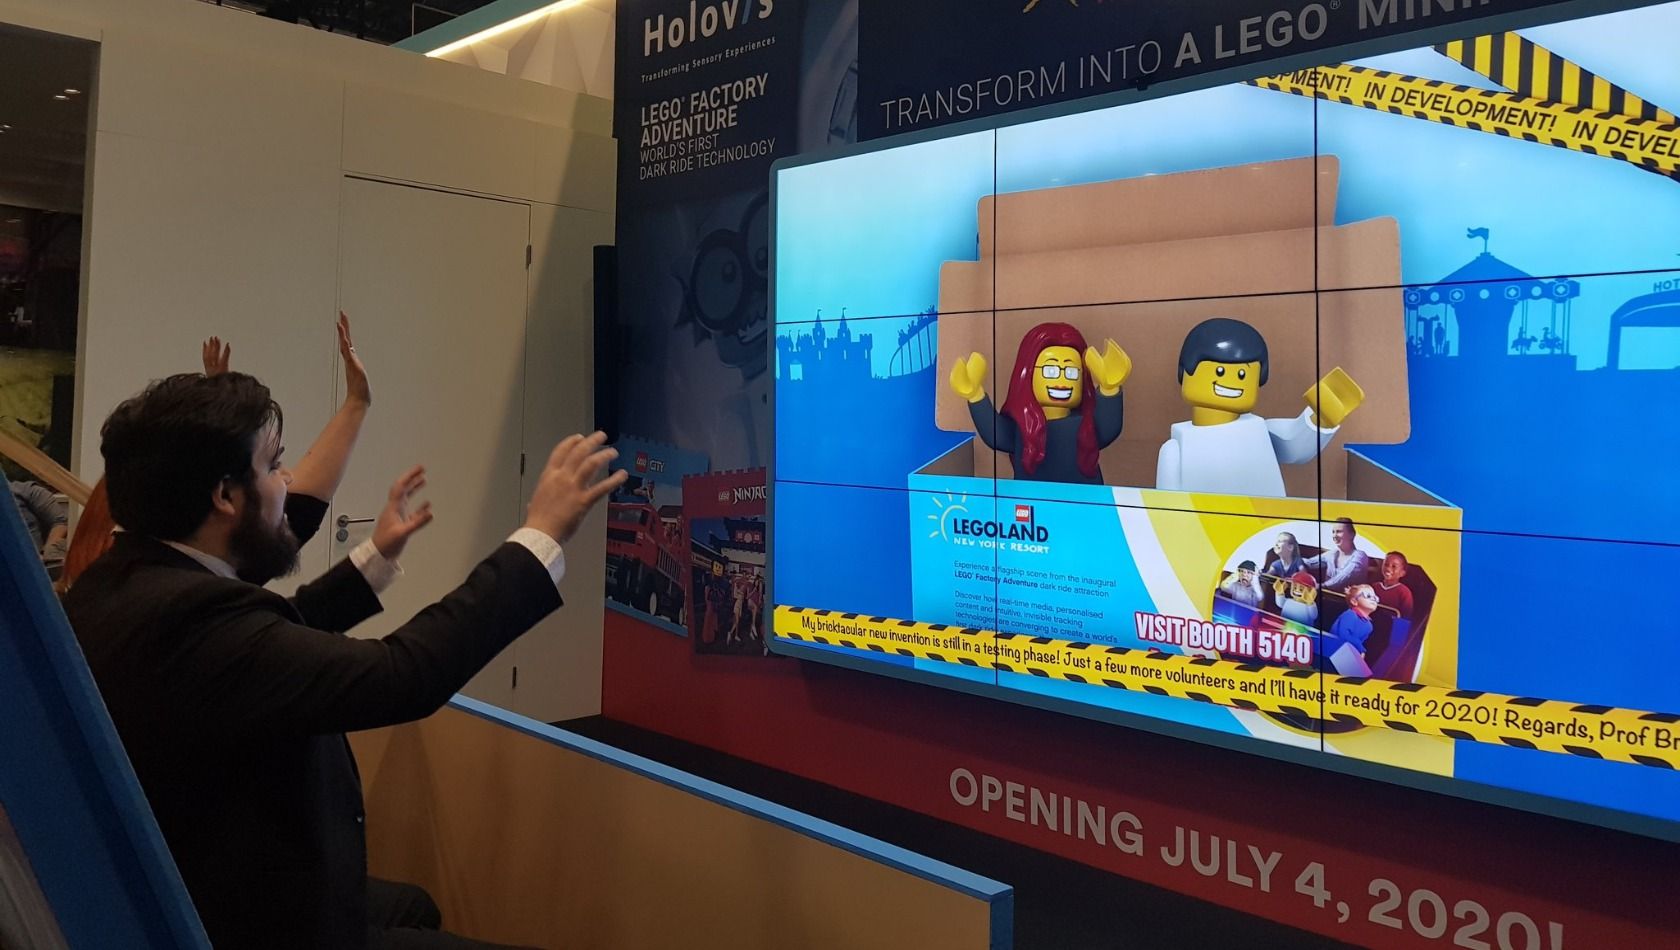 LEGO Factory Adventure Preview LEGOLAND New York IAAPA Expo Orlando 2019